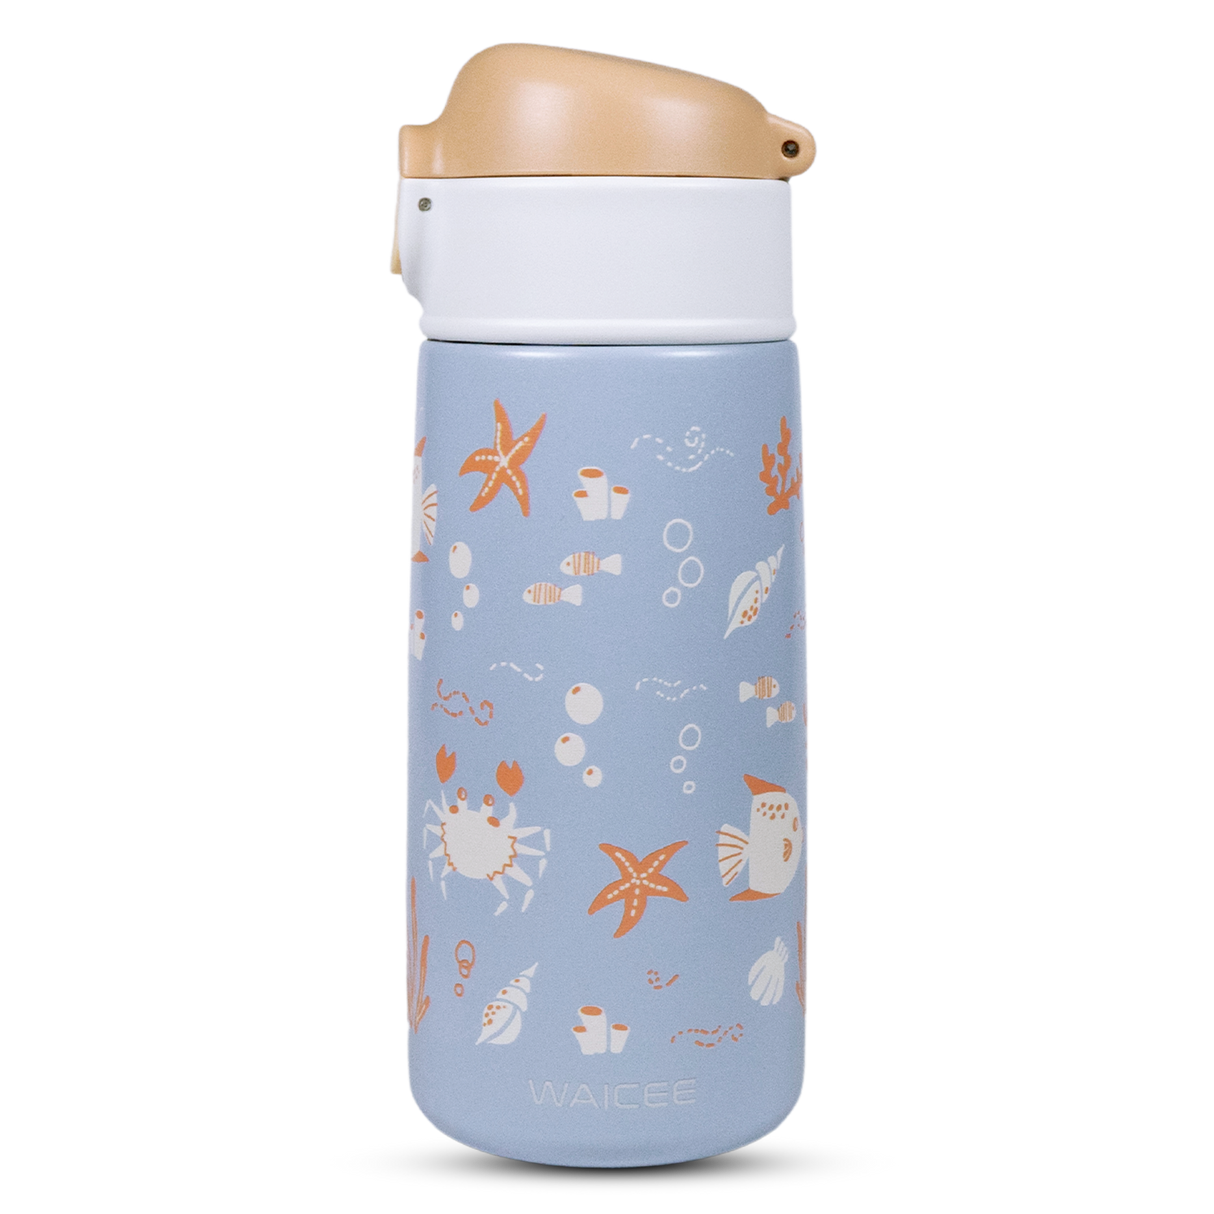 Lavender Sea shore Reusable Bottle – 16oz / 480ml